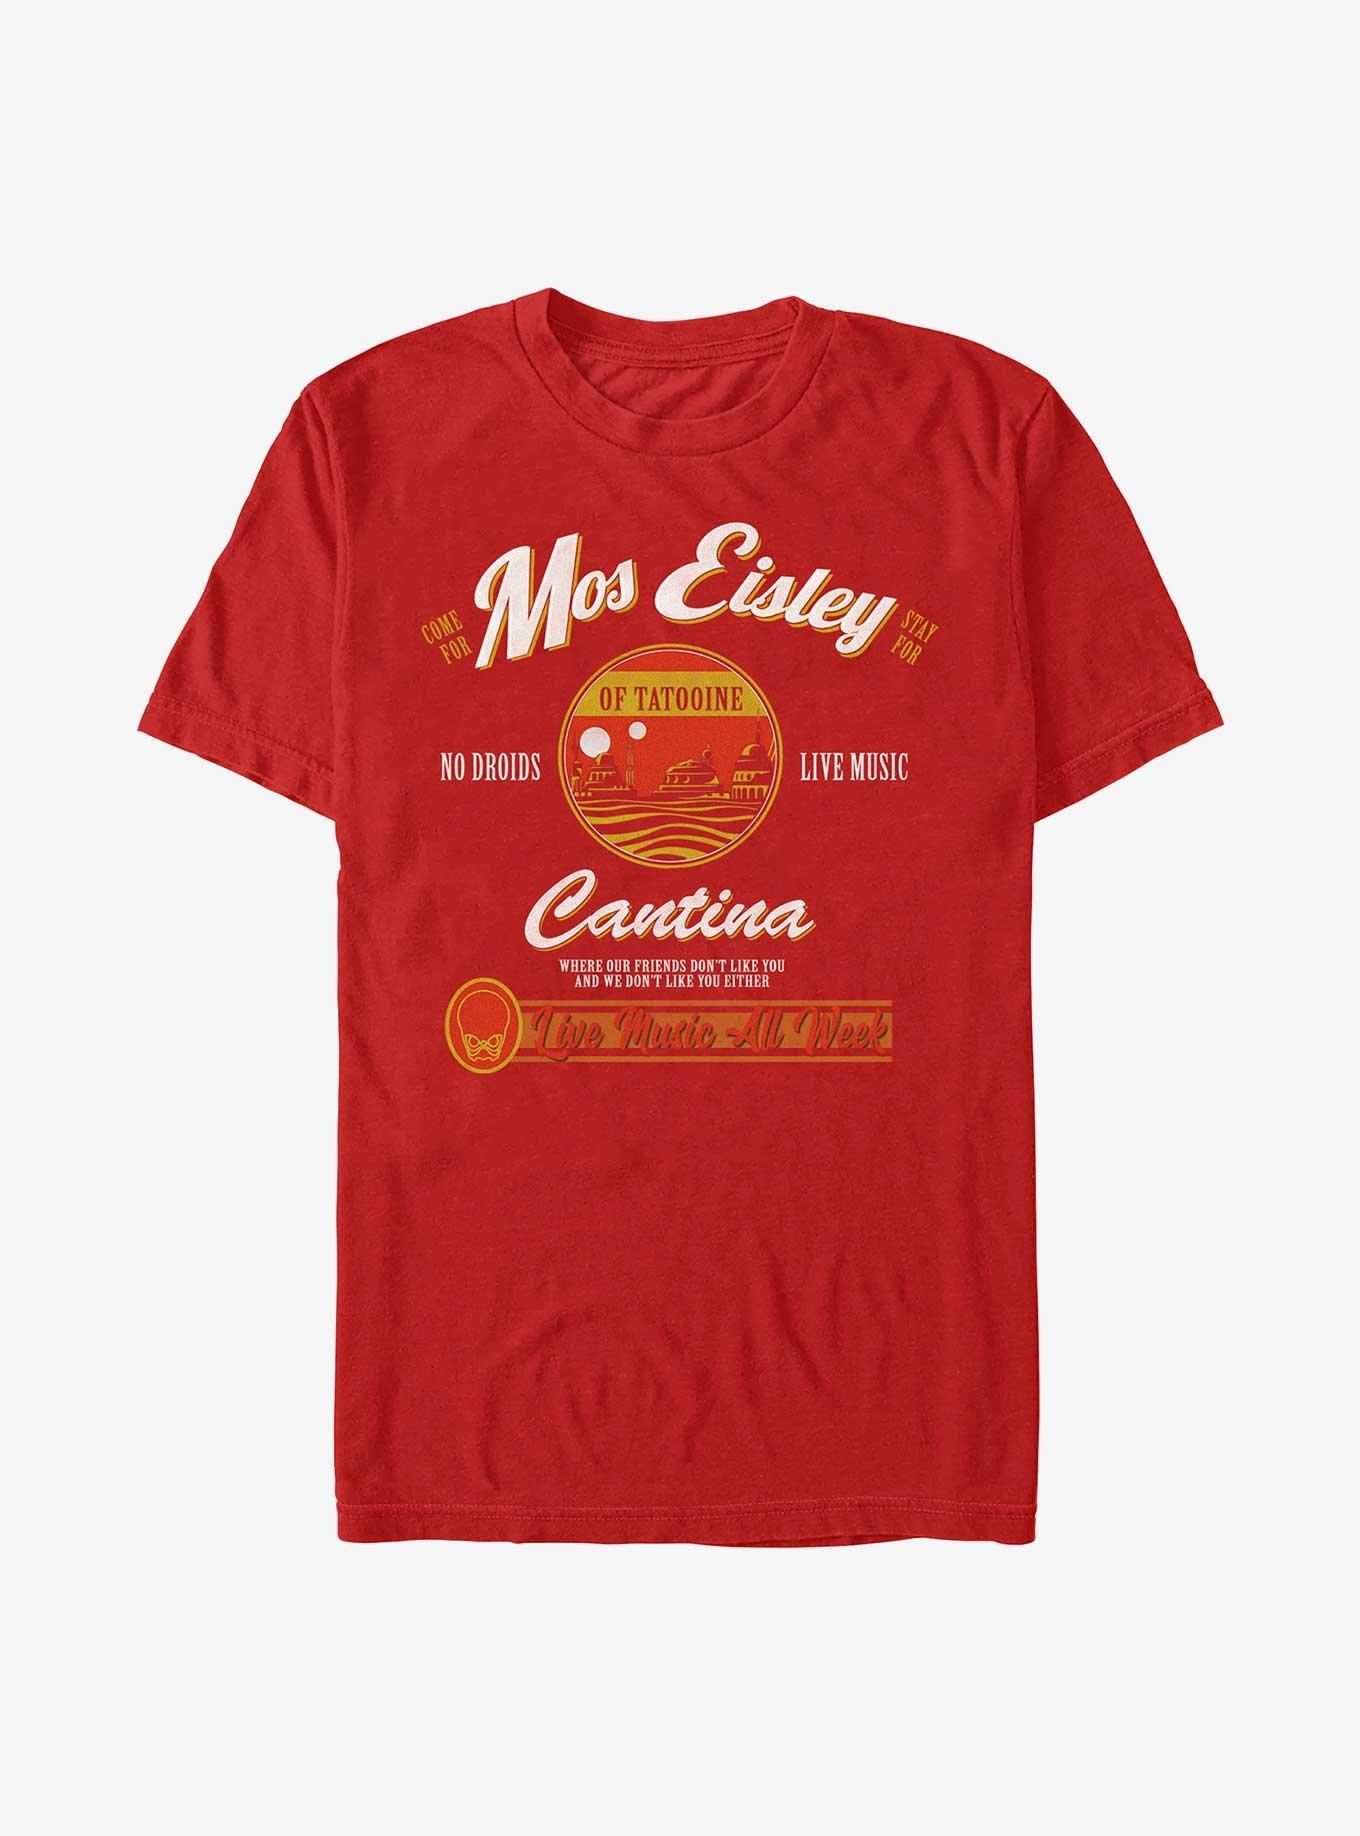 Star Wars Visit Mos Eisley Cantina T-Shirt, RED, hi-res